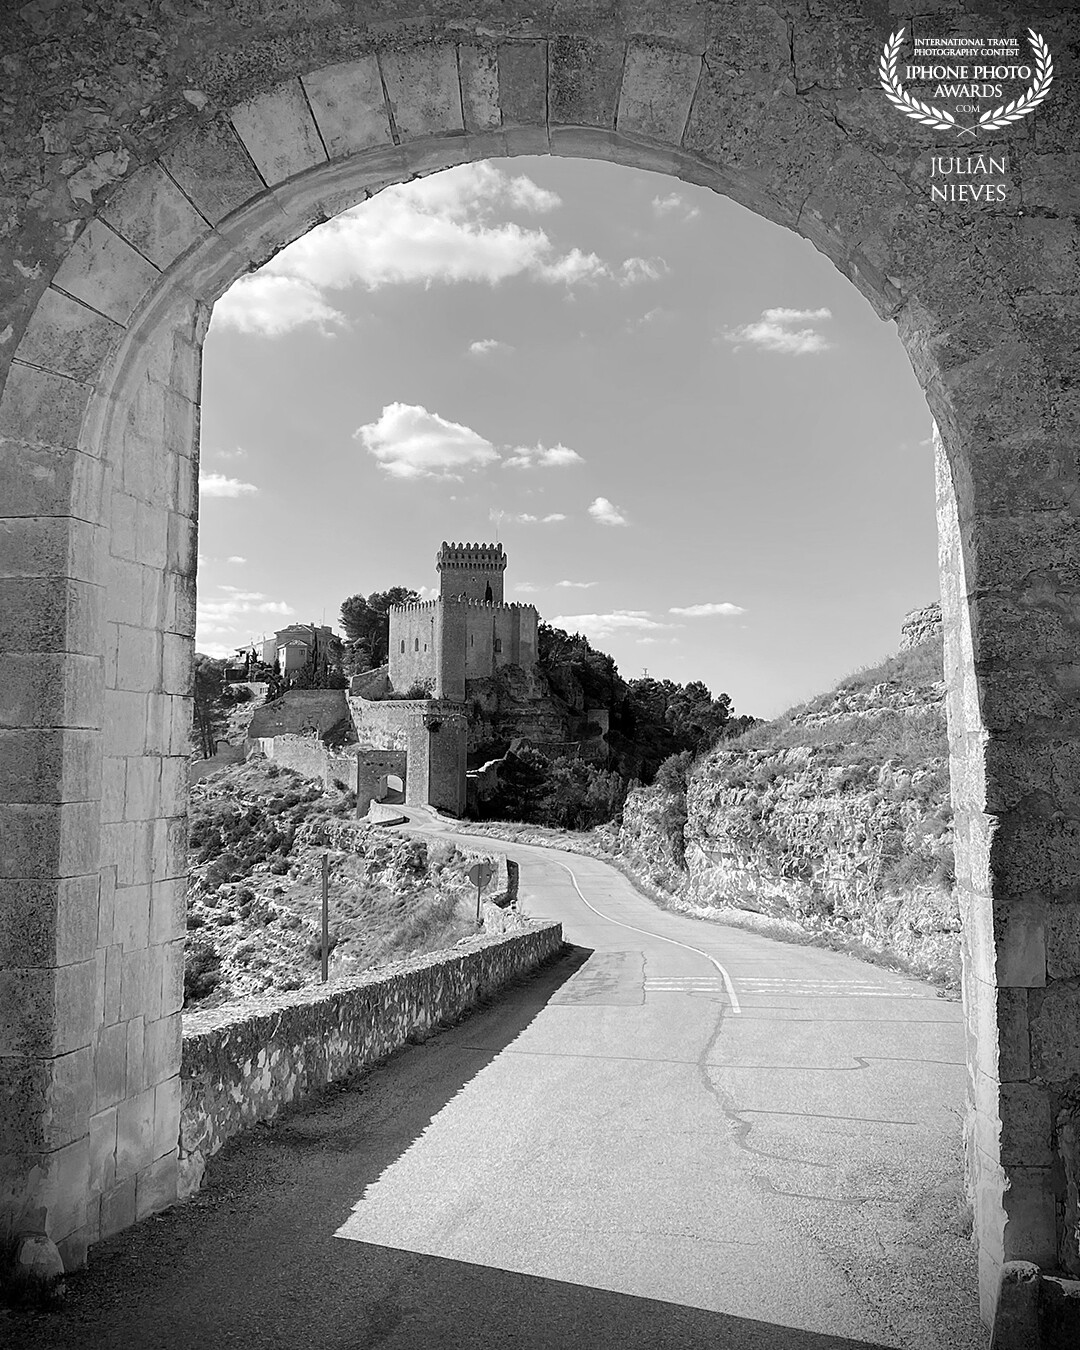 Las impresionantes vistas del castillo morisco del siglo VIII en la ciudad de Alarcon - Cuenca, a través de una de las puertas que hay en las murallas que rodean la población.